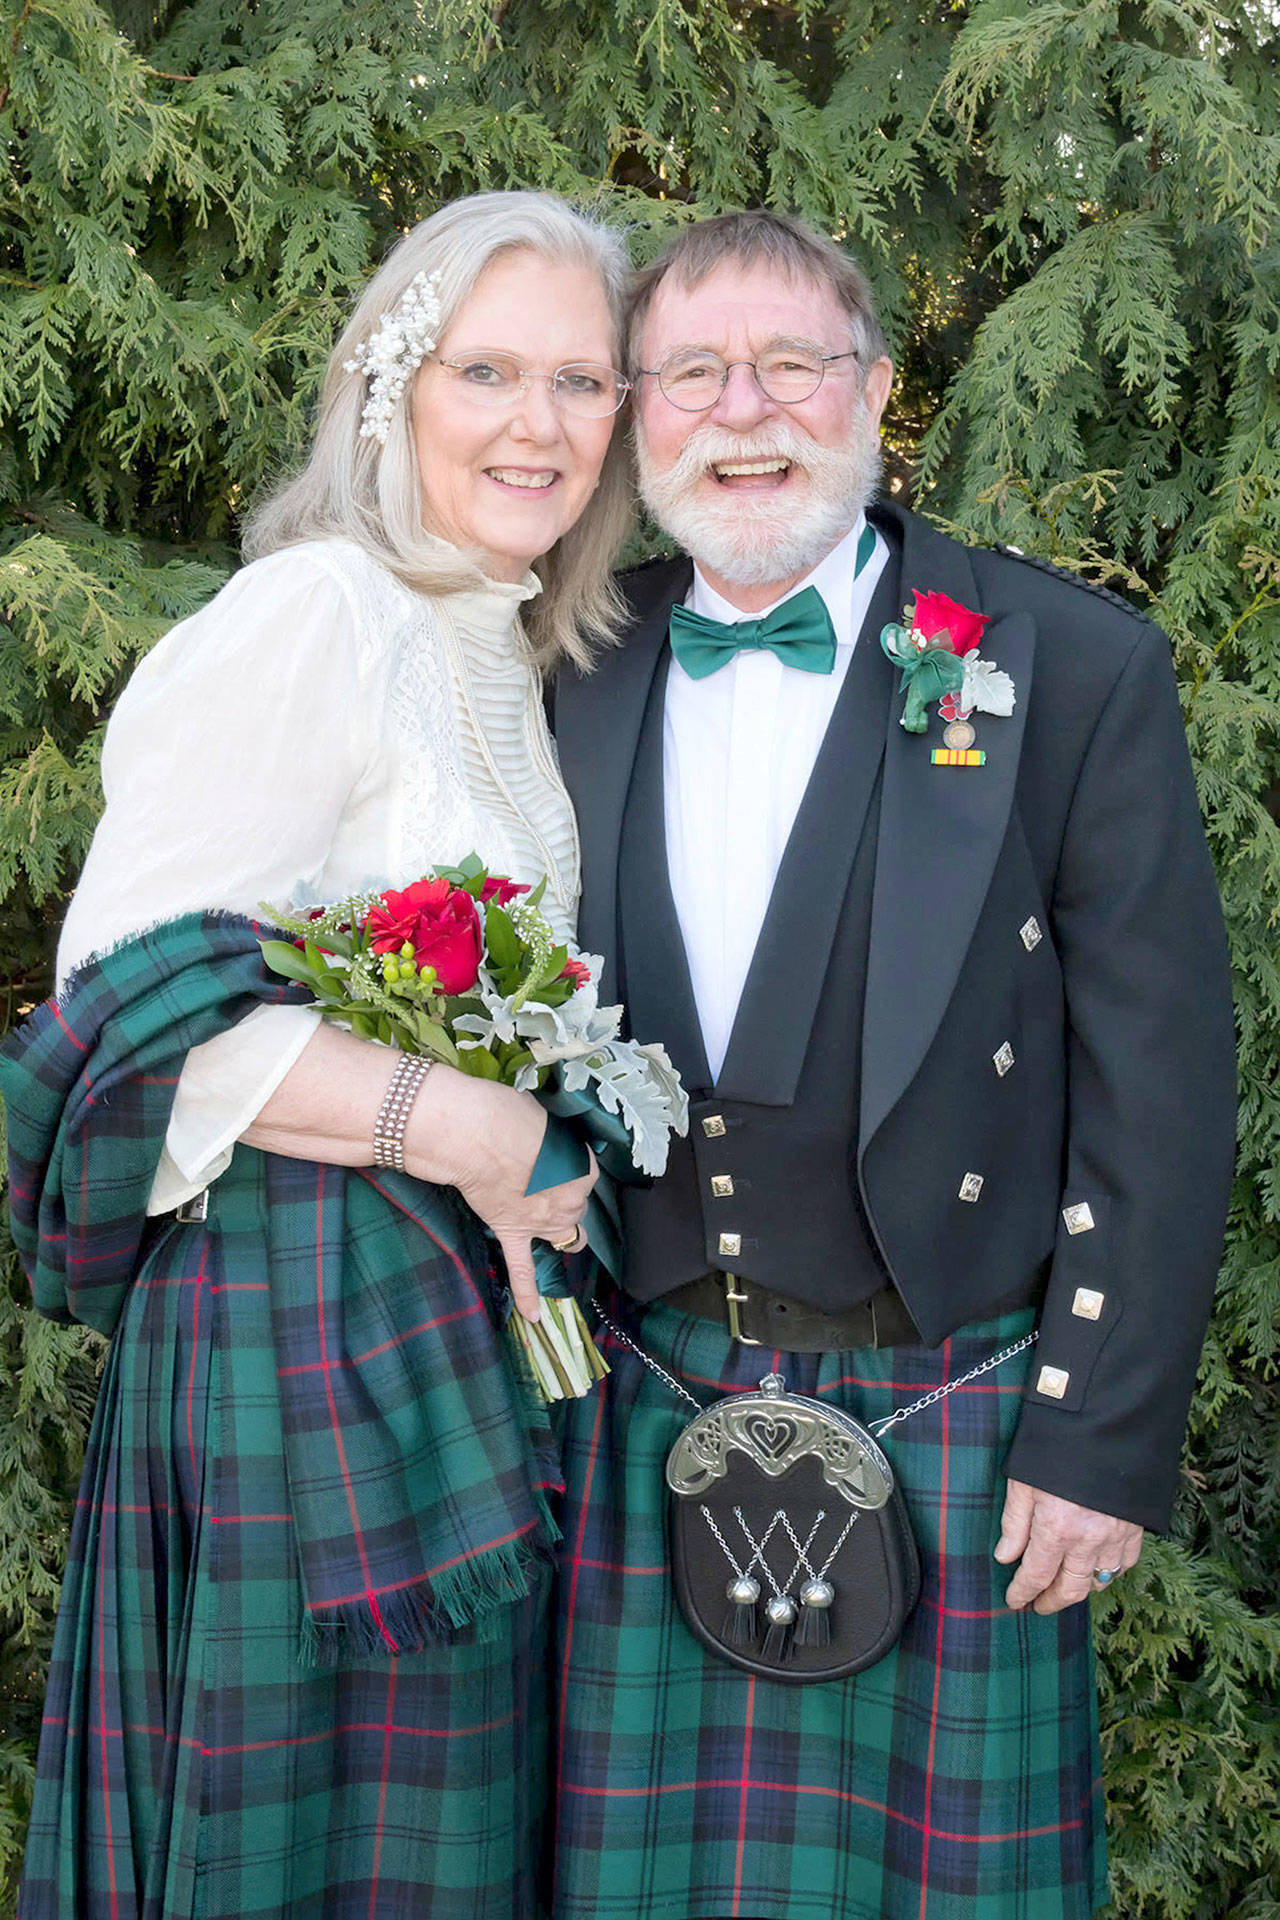 Cathy Haight et Michael Eakle de Port Angeles ont choisi la tenue écossaise pour leur mariage de mars. (Photo soumise)